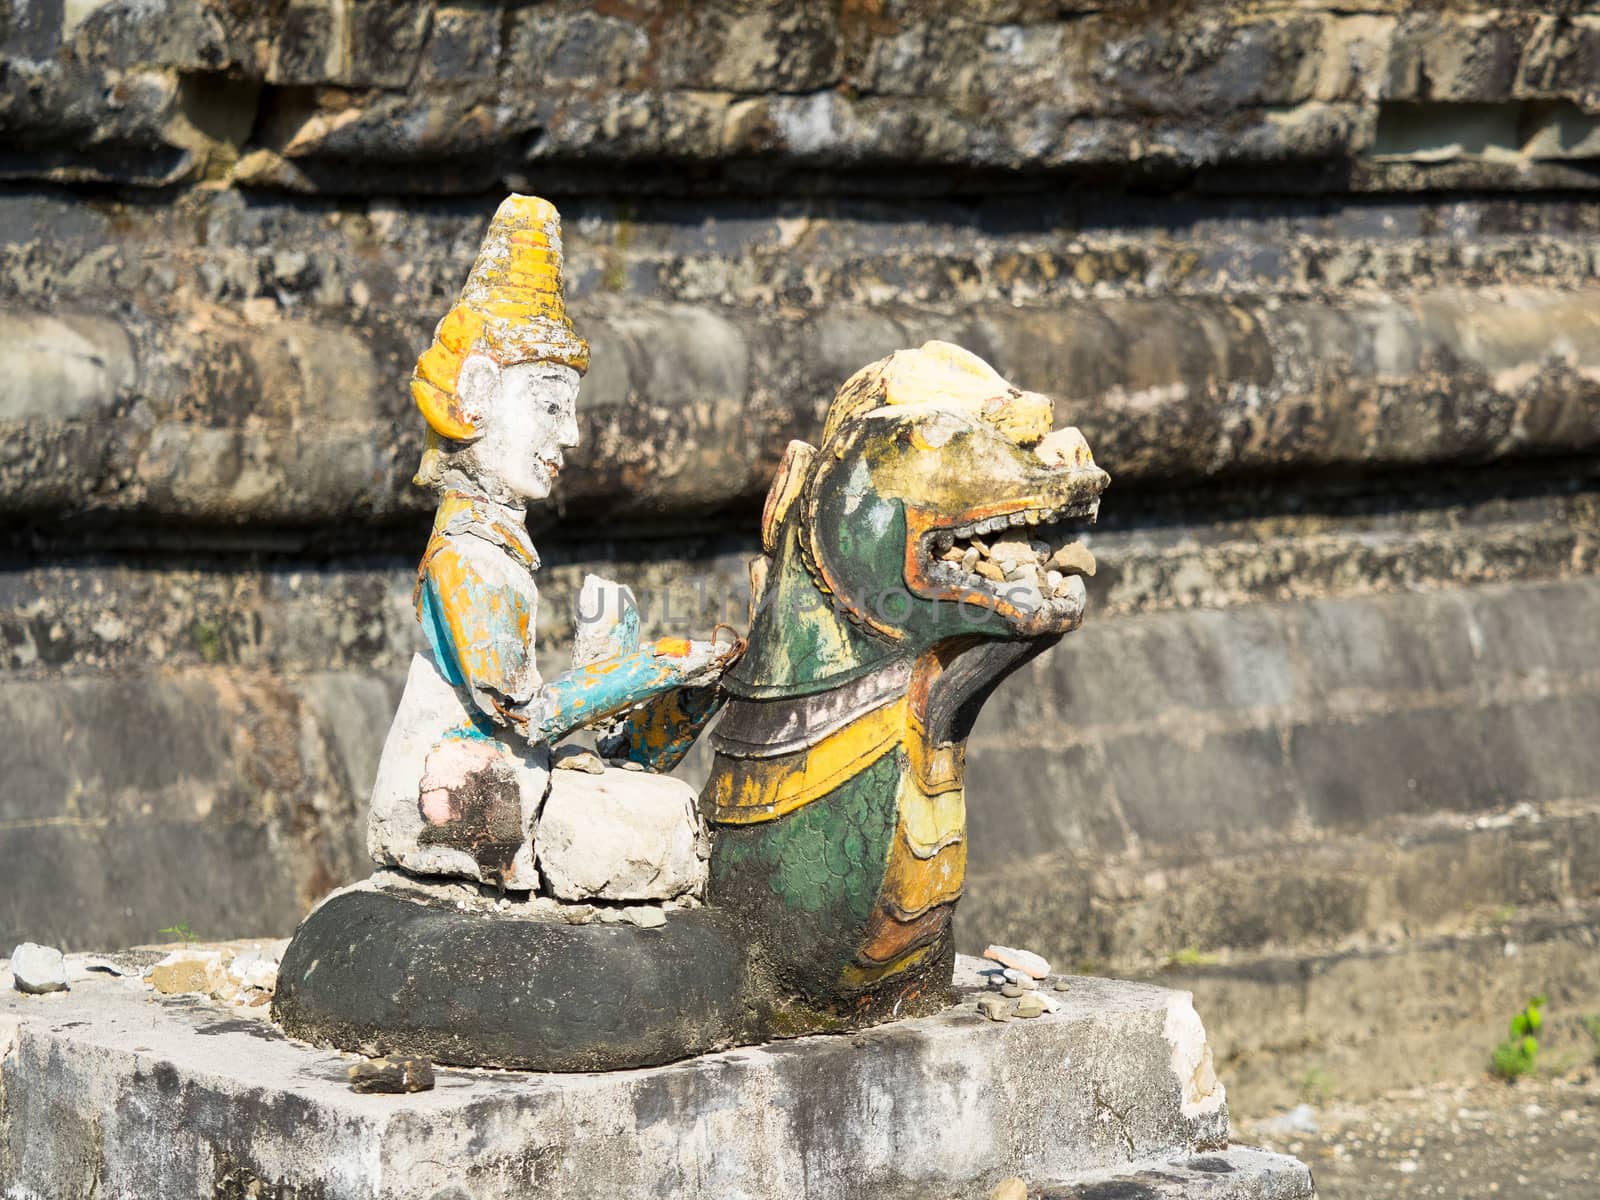 Broken, religious figurine in Mrauk U, Myanmar by epixx